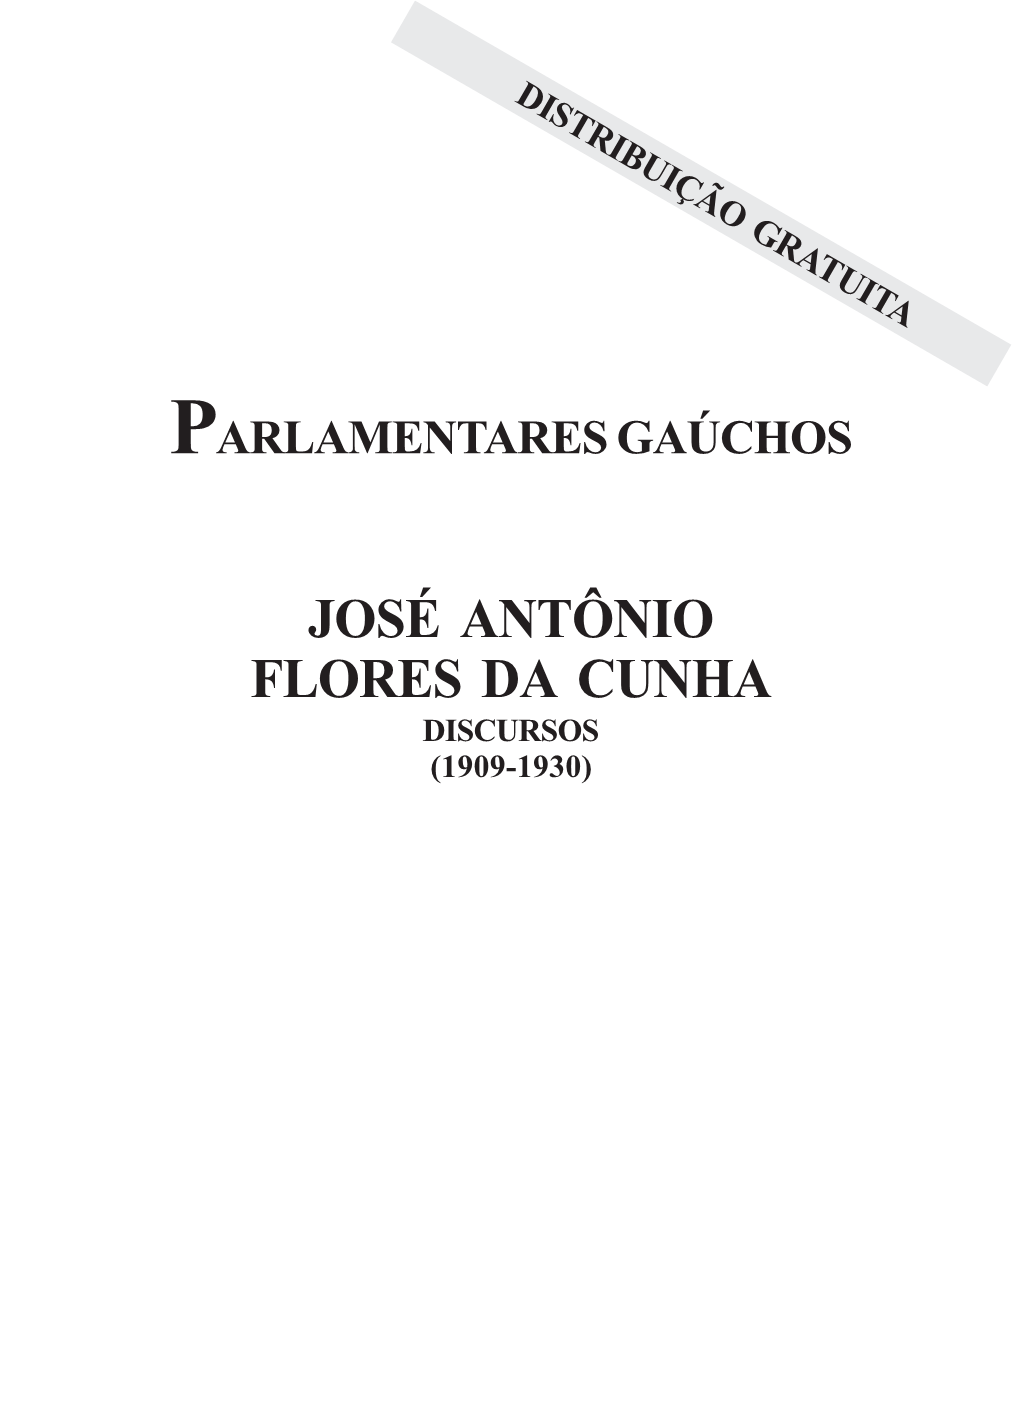 José Antônio Flores Da Cunha: Discursos (1909-1930) / José Antônio Flores Da Cunha; Org